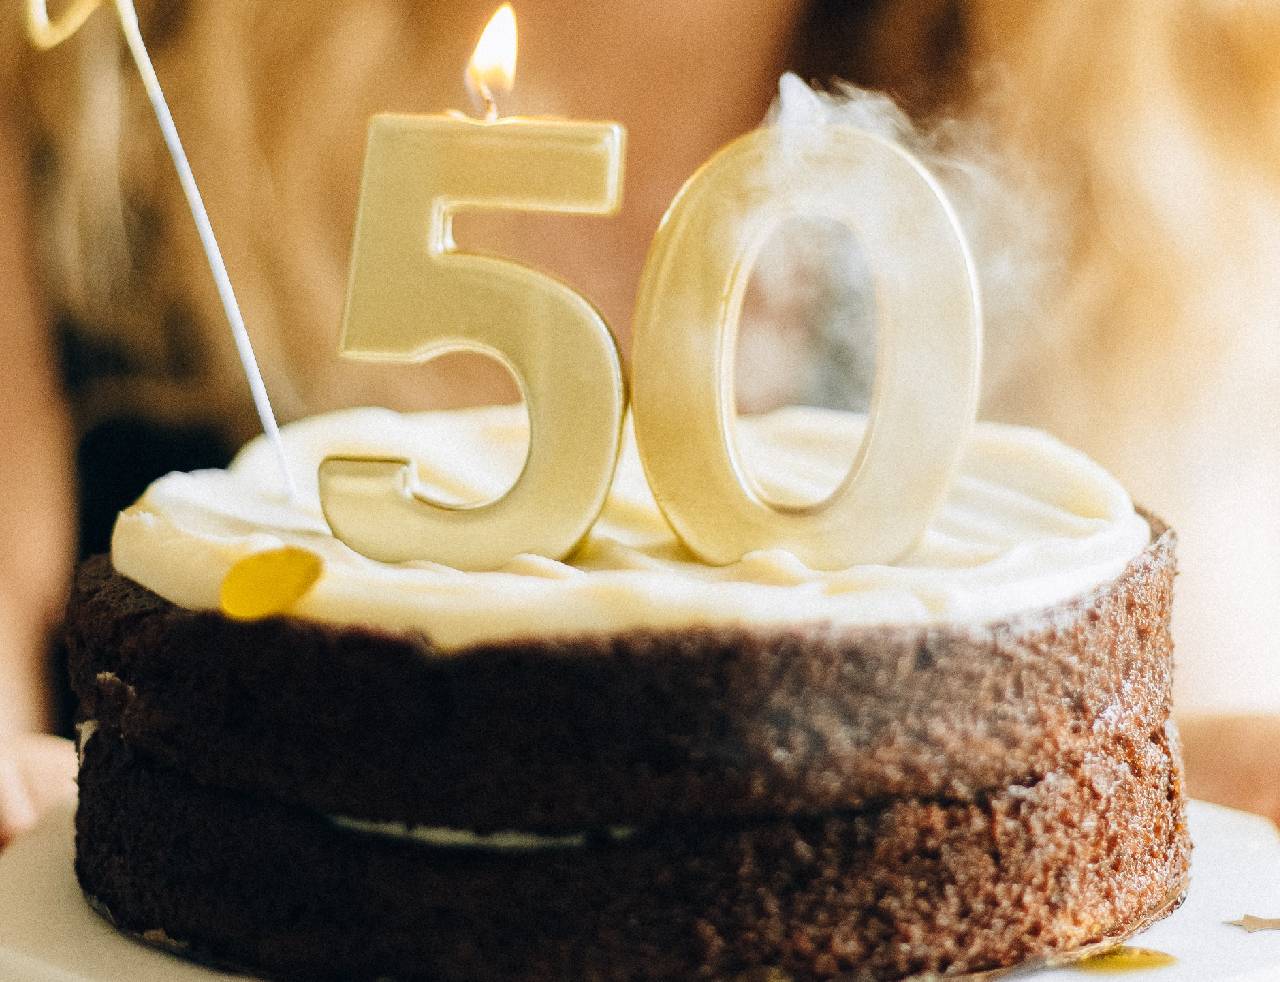 Come festeggiare alla grande i 50 anni - Il blog di